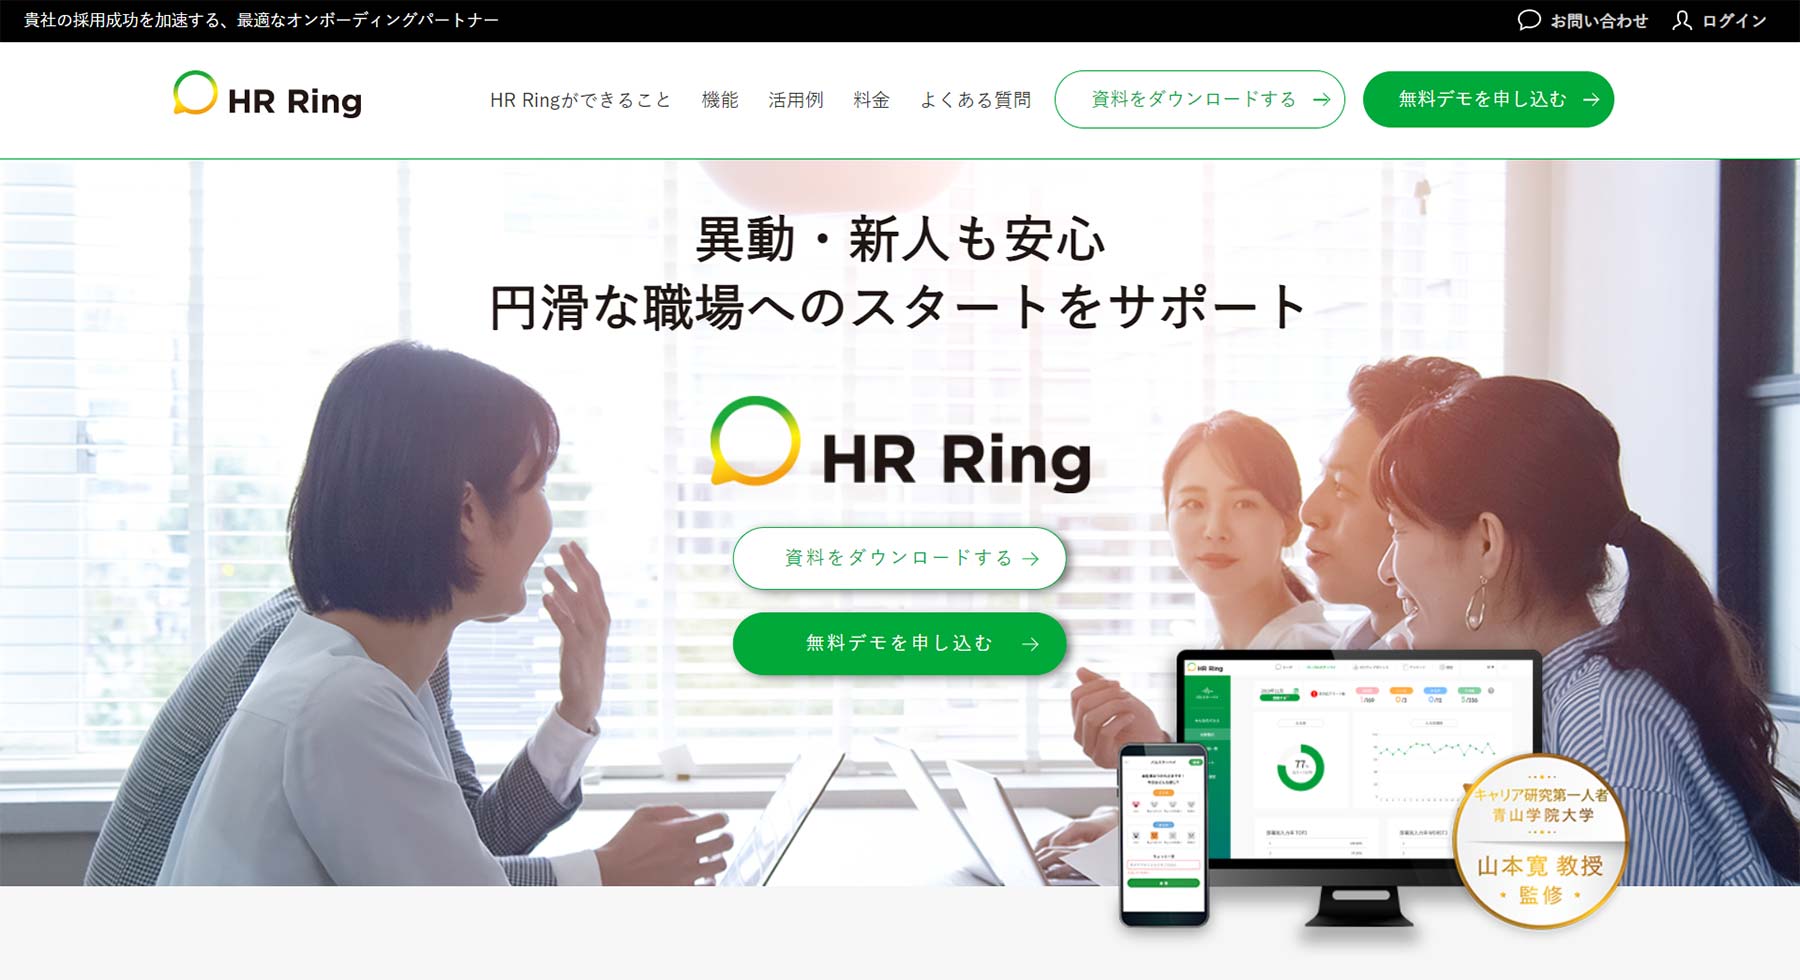 HR Ring公式Webサイト